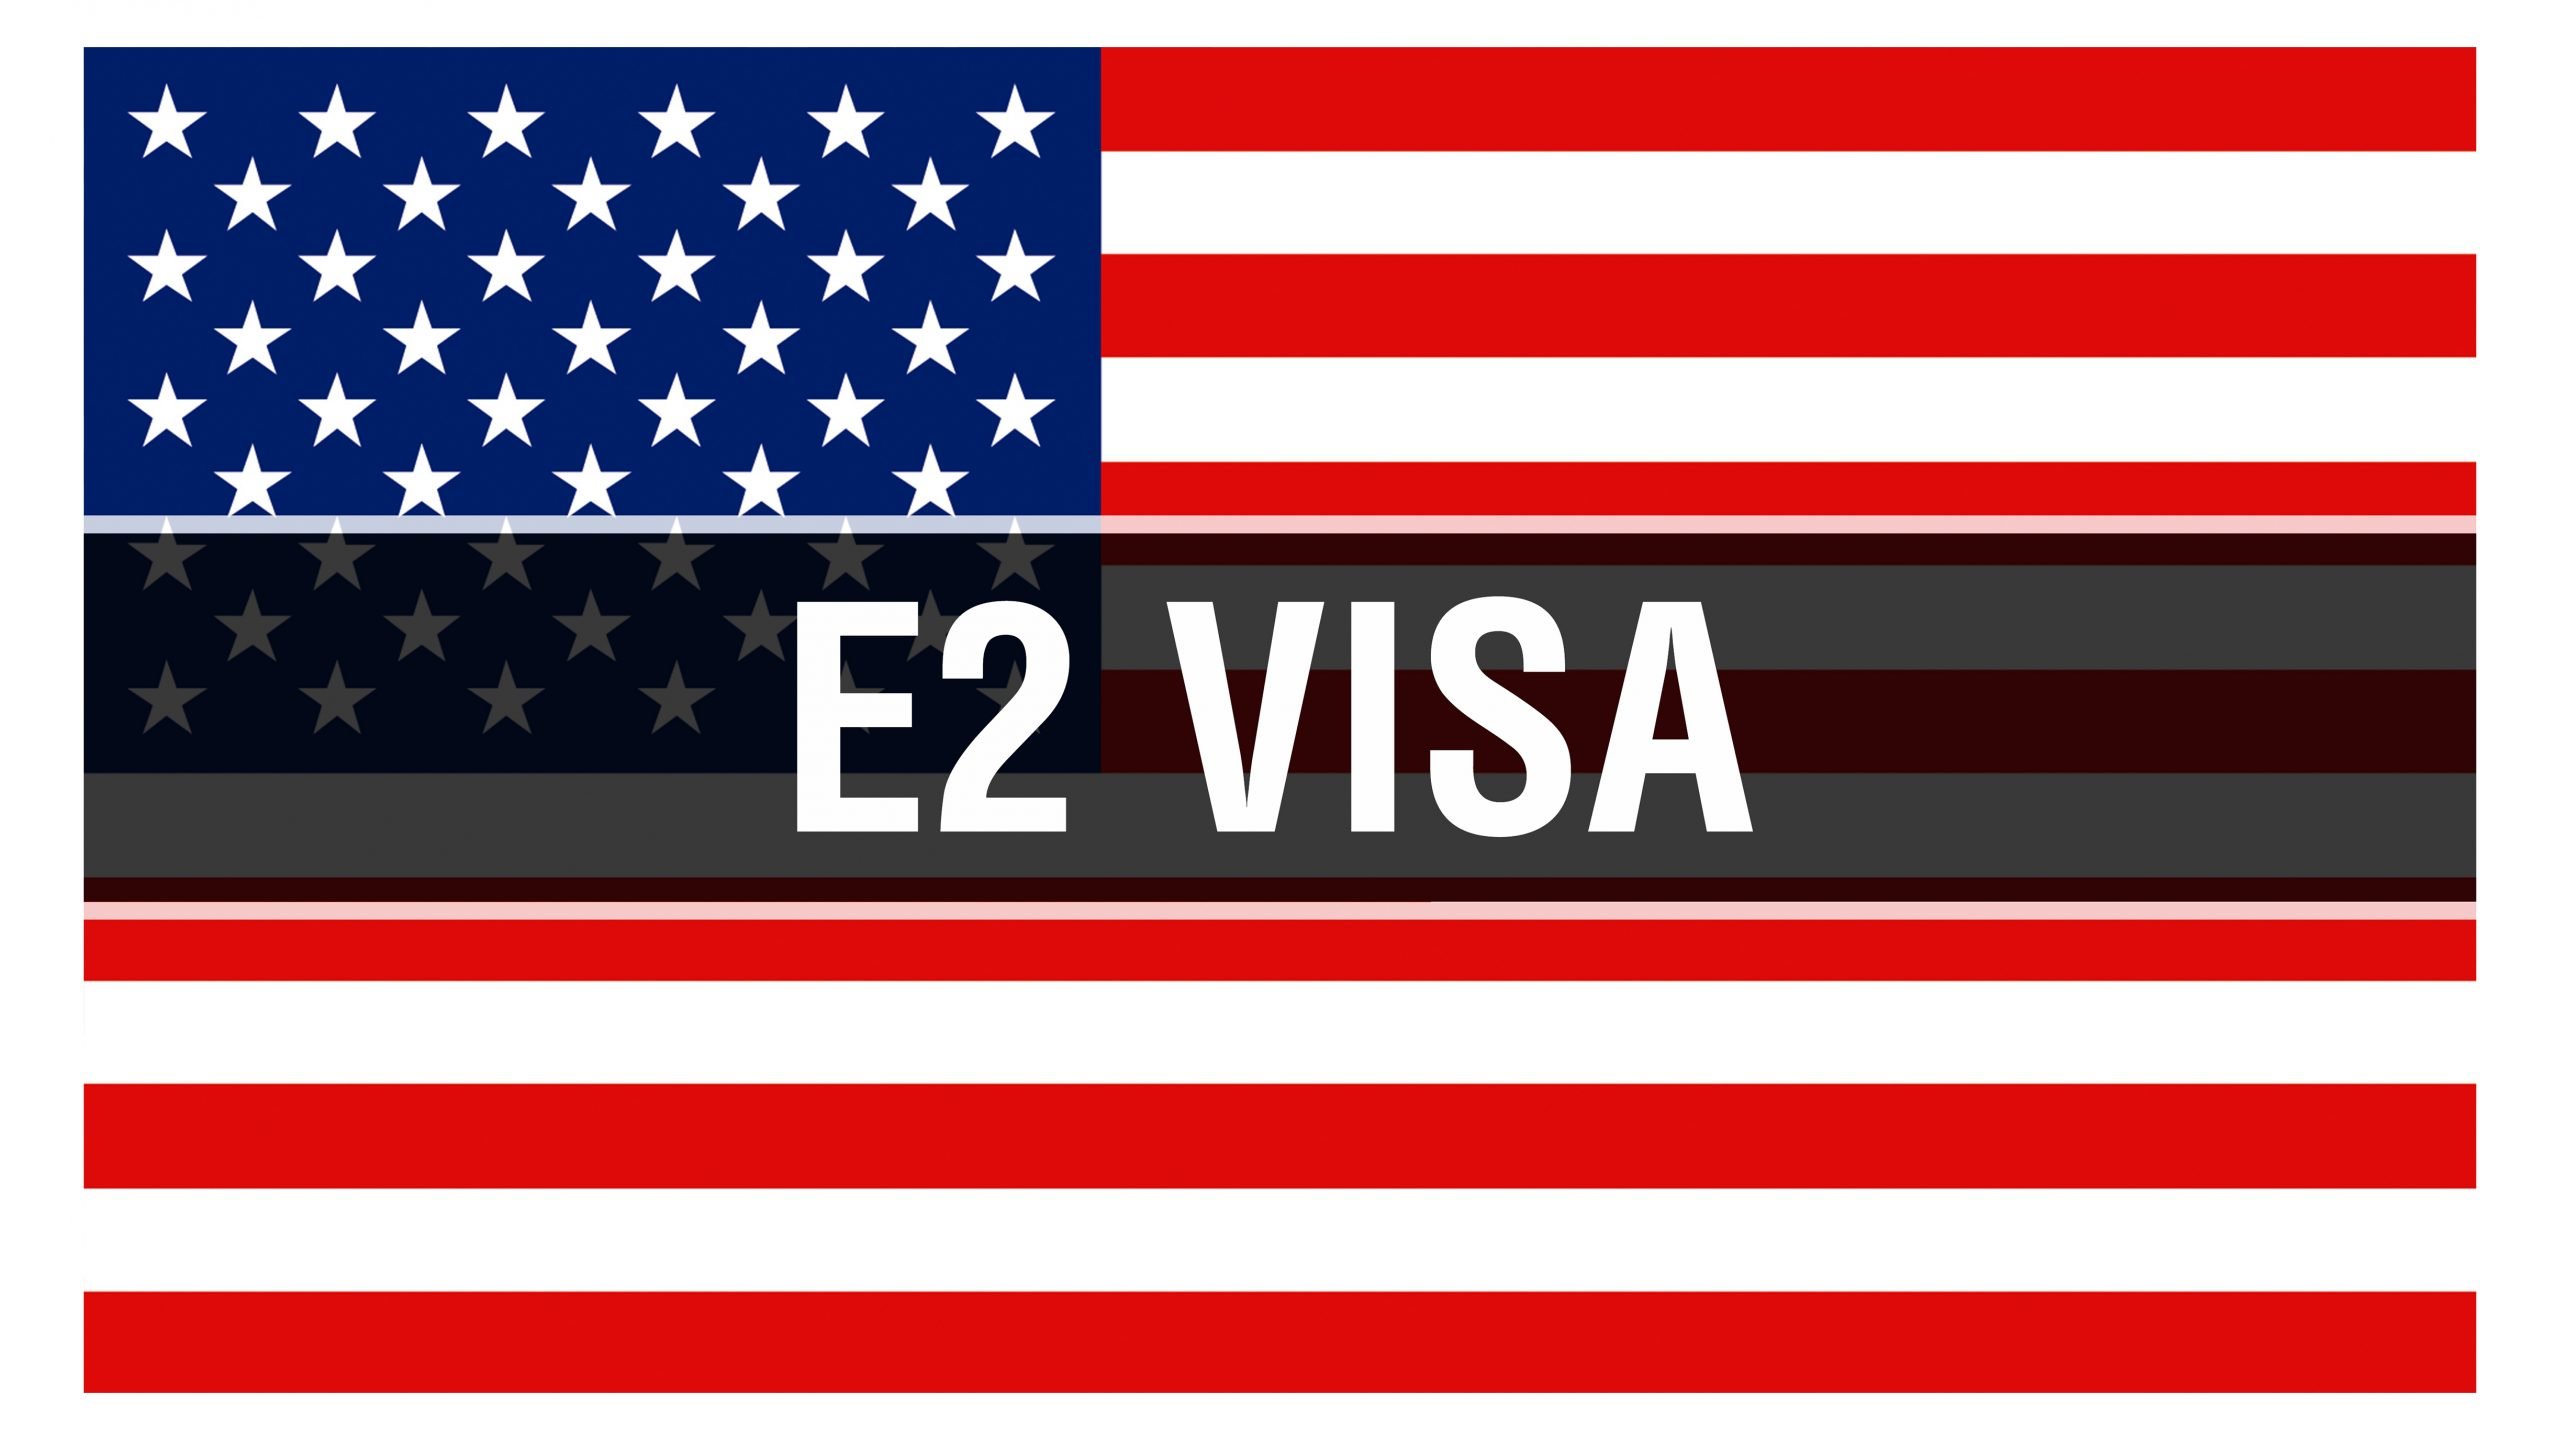 Tỷ Lệ Phê Duyệt Visa E2 Đạt Mức Cao Kỷ Lục